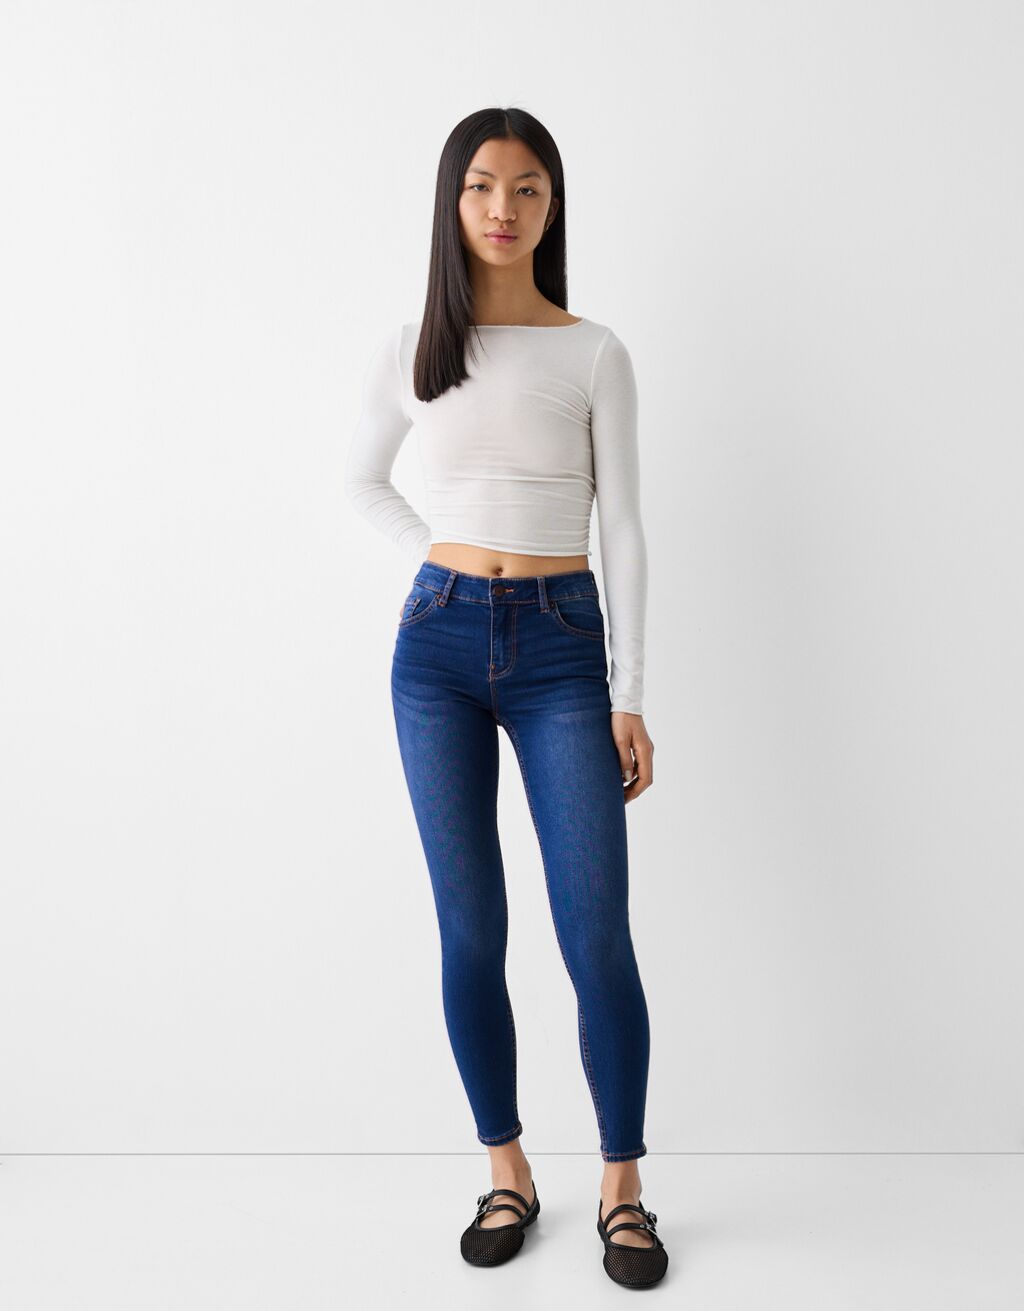 Shascullfites Denim Jeans Leggings Sky Blue Push Up Jeans For Curvy Women |  eBay